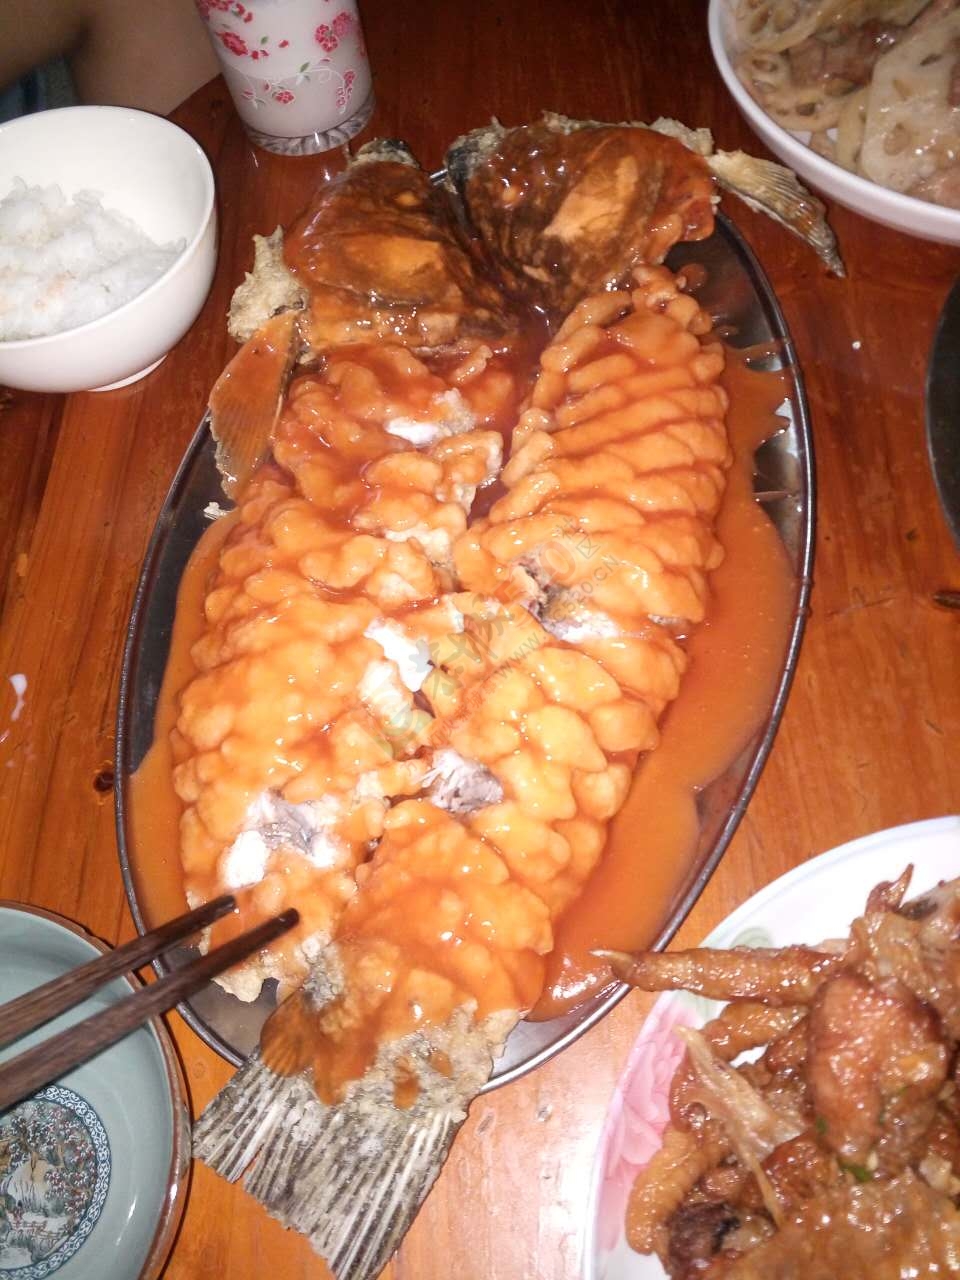 昨天晚上做的松鼠魚，跟坛友们分享443 / 作者:以空。 / 帖子ID:176842